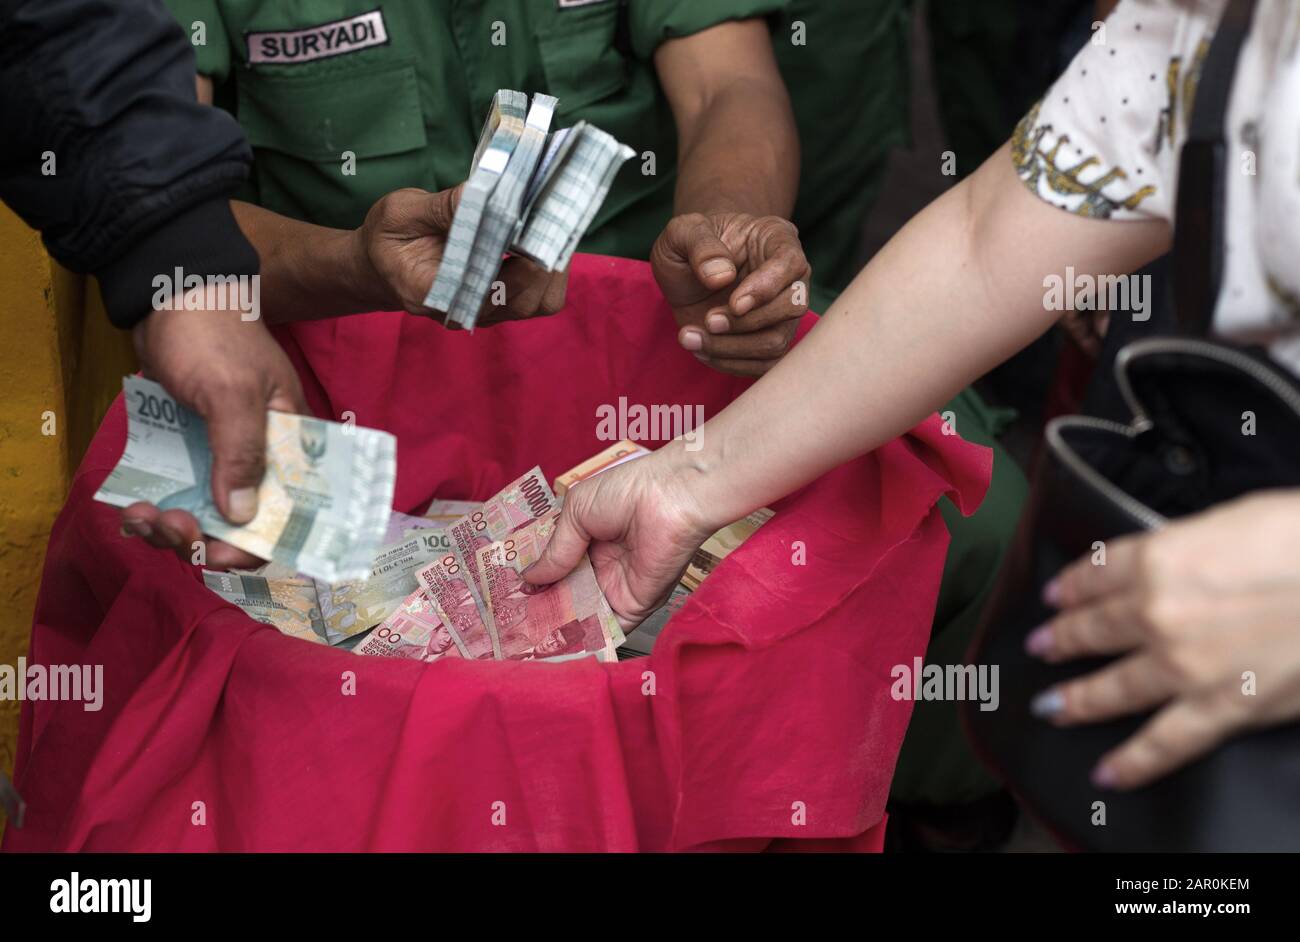 Les mains des gens distribuent de l'argent lors de la célébration du nouvel an chinois à Jakarta. Banque D'Images